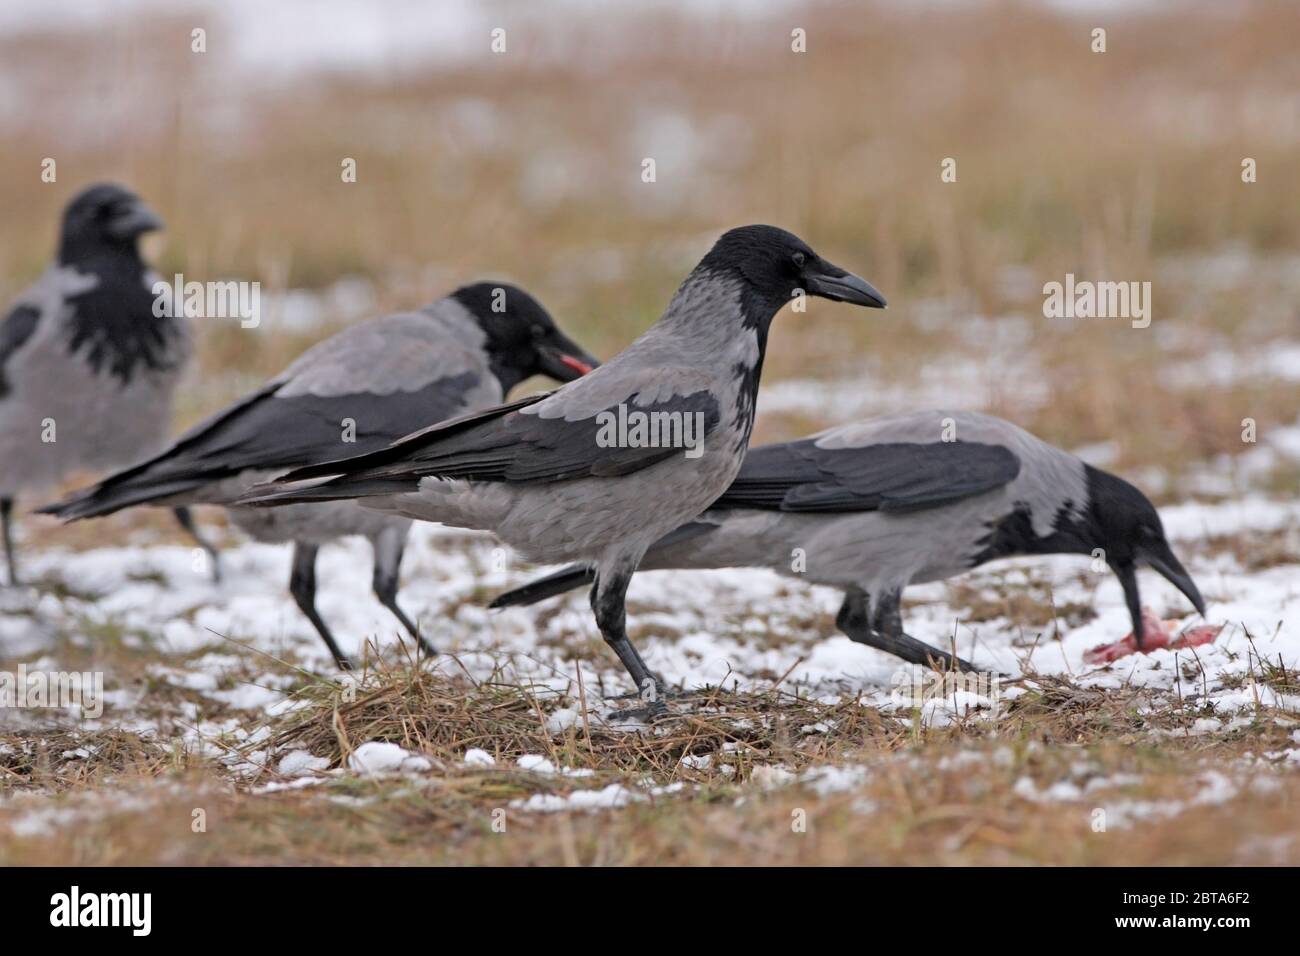 CORVO CON CAPPUCCIO (corvus corone cornix) gruppo che si nutre di frattaglie in un campo innevato. Foto Stock